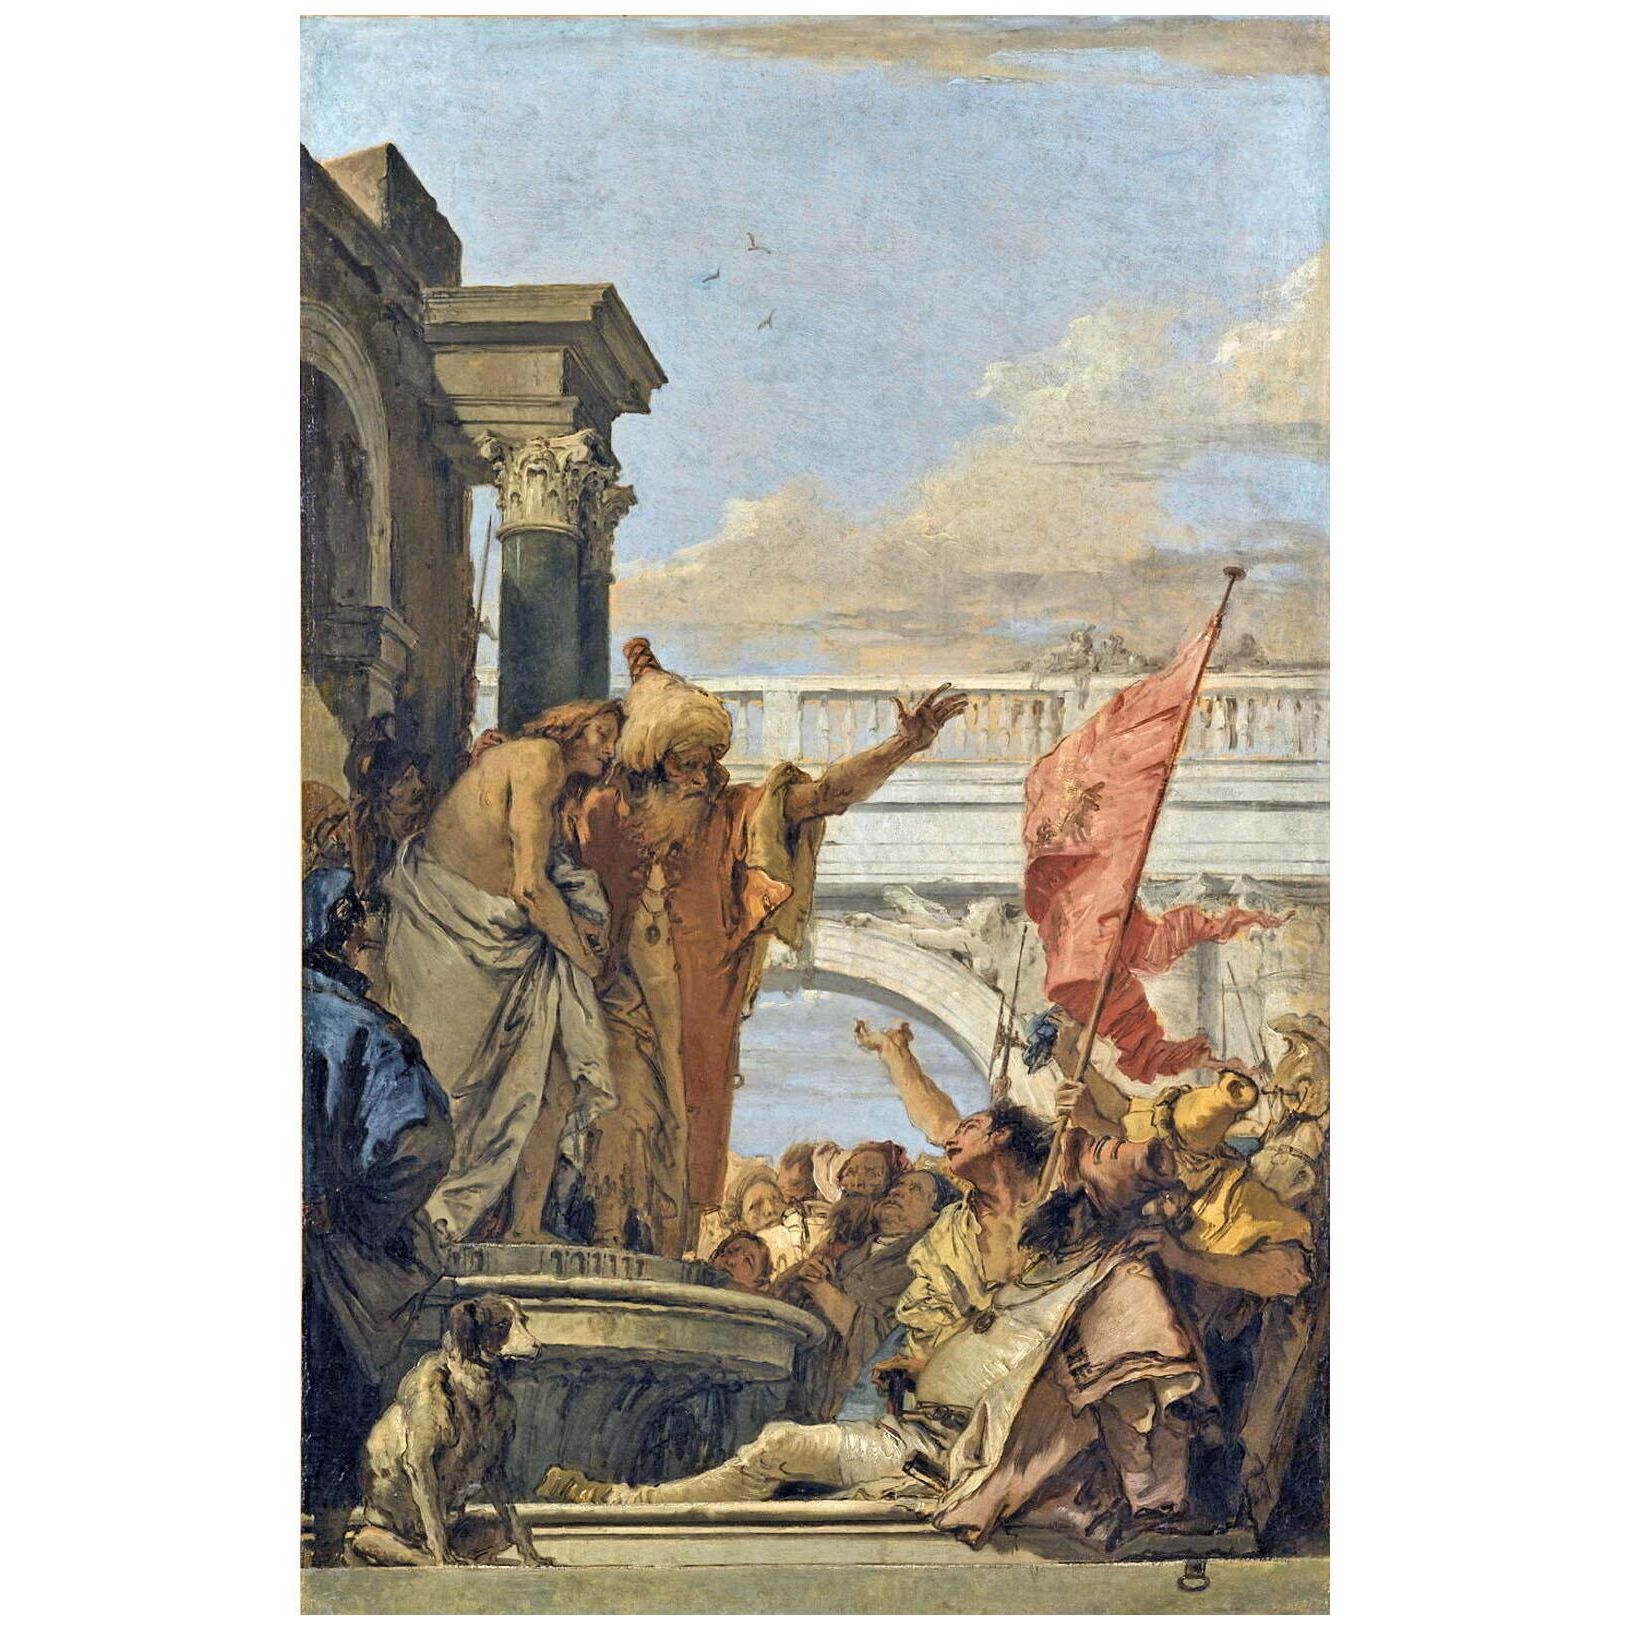 Giovanni Battista Tiepolo. Ecce Homo. 1760. Louvre